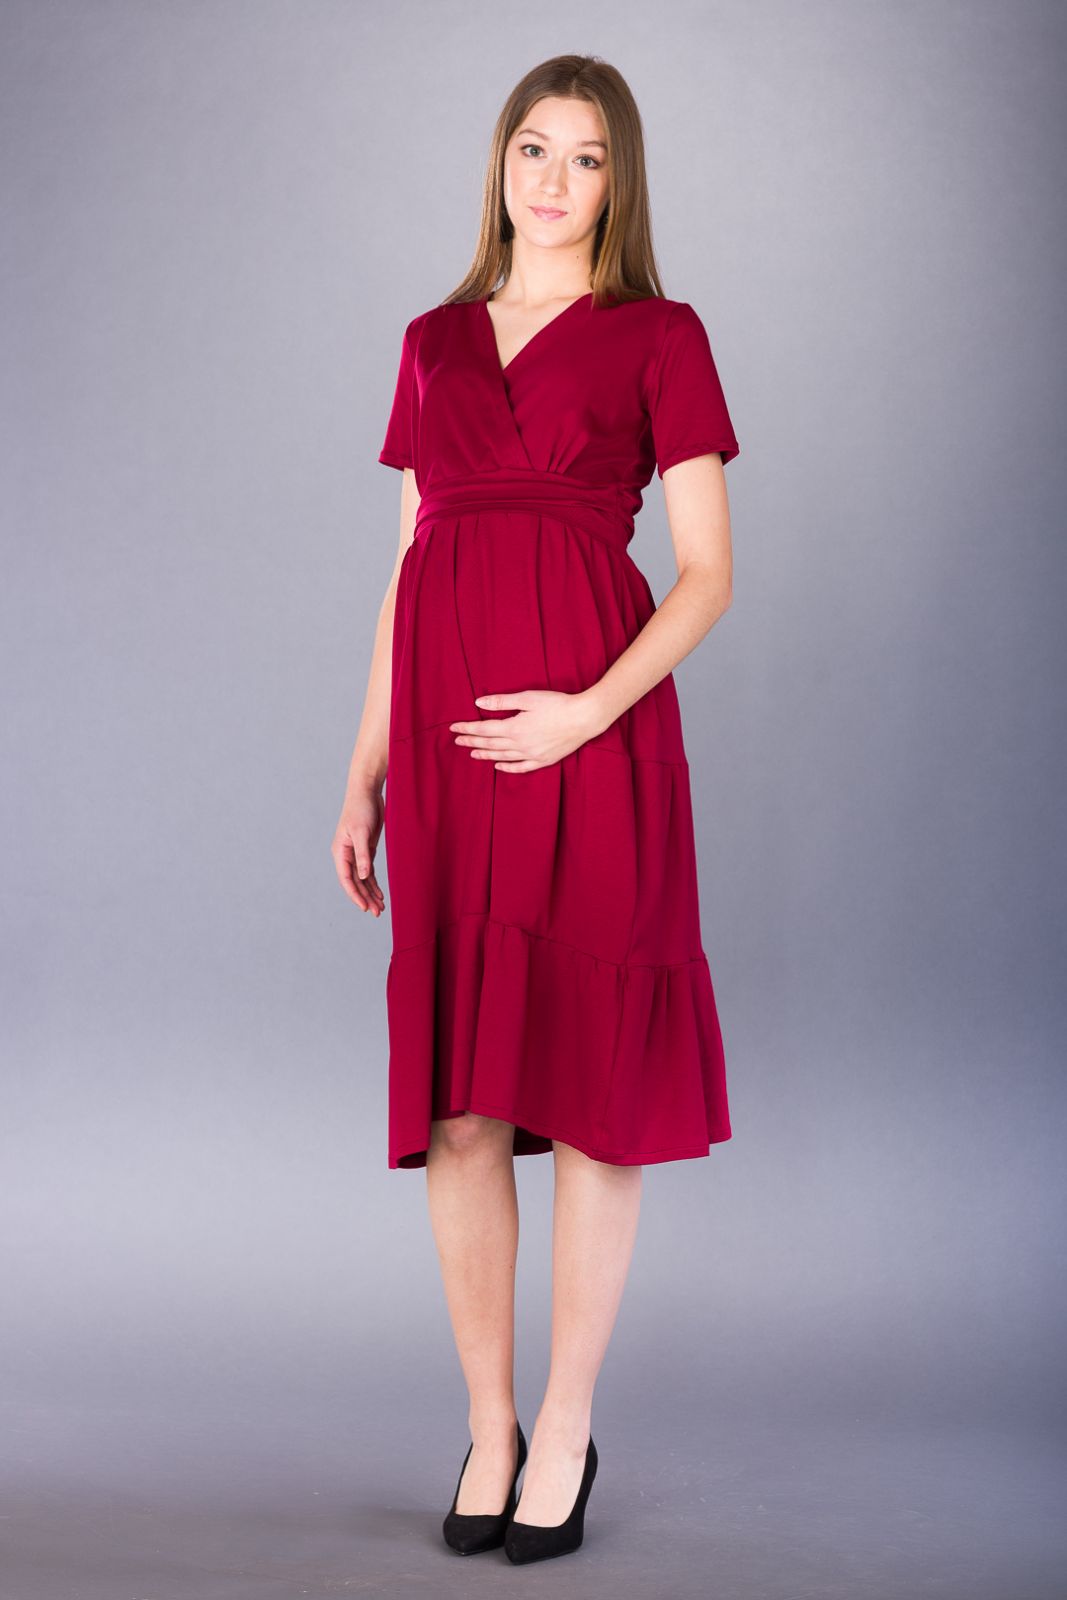 Těhotenské šaty BEBEFIELD - Manuela - Velikost 42